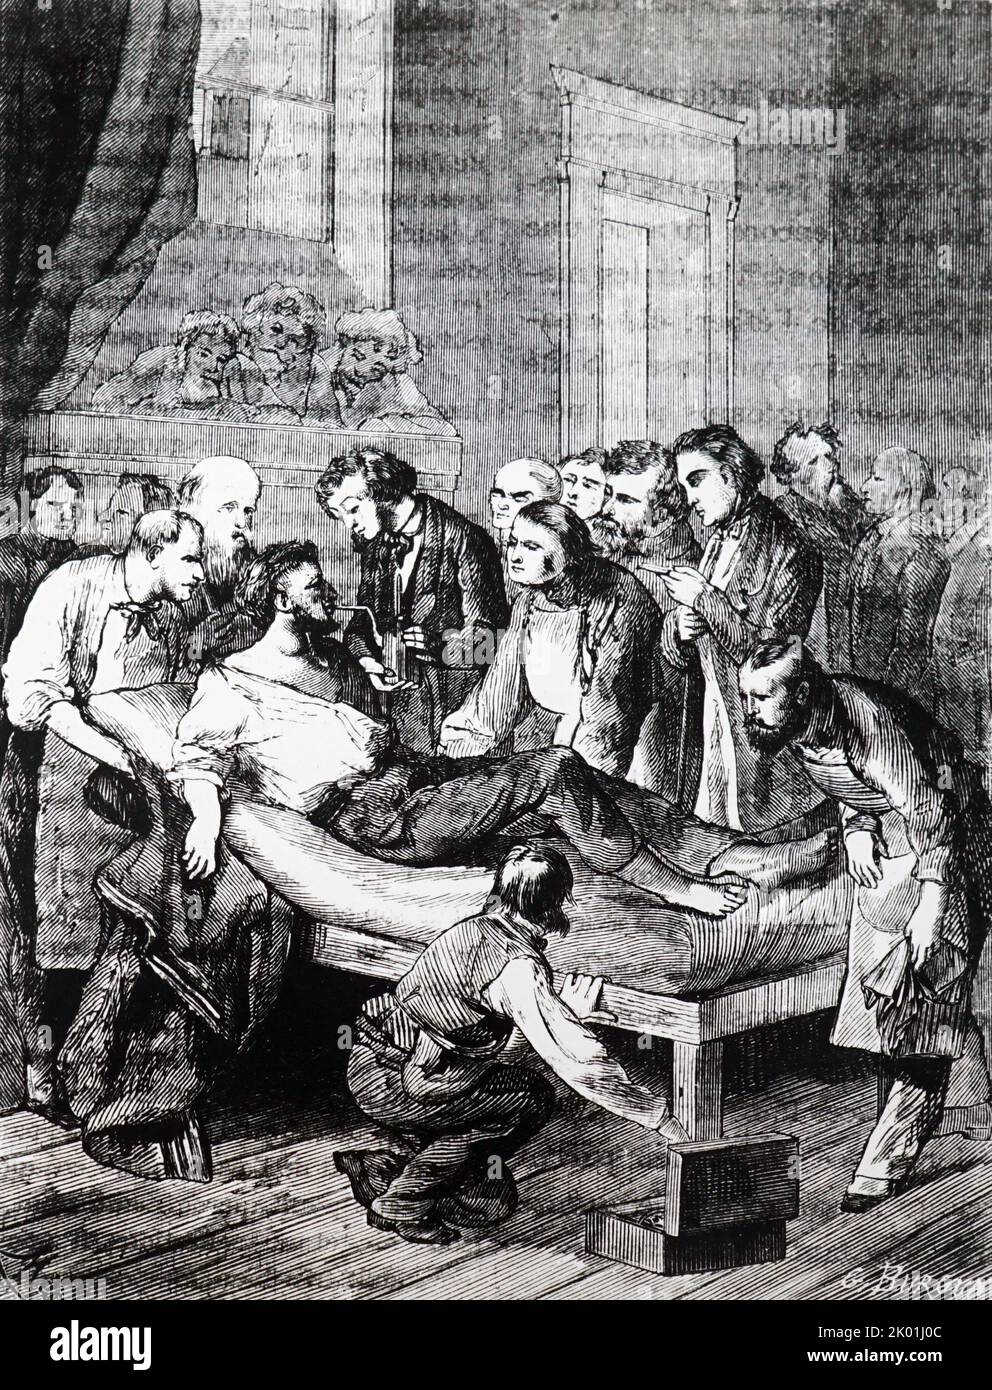 William Morton démontre la sécurité de l'éther. Hôpital général de Massechusettes, 1846. De Louis Figuier les Merveilles de la Science, Paris, c1870. Banque D'Images